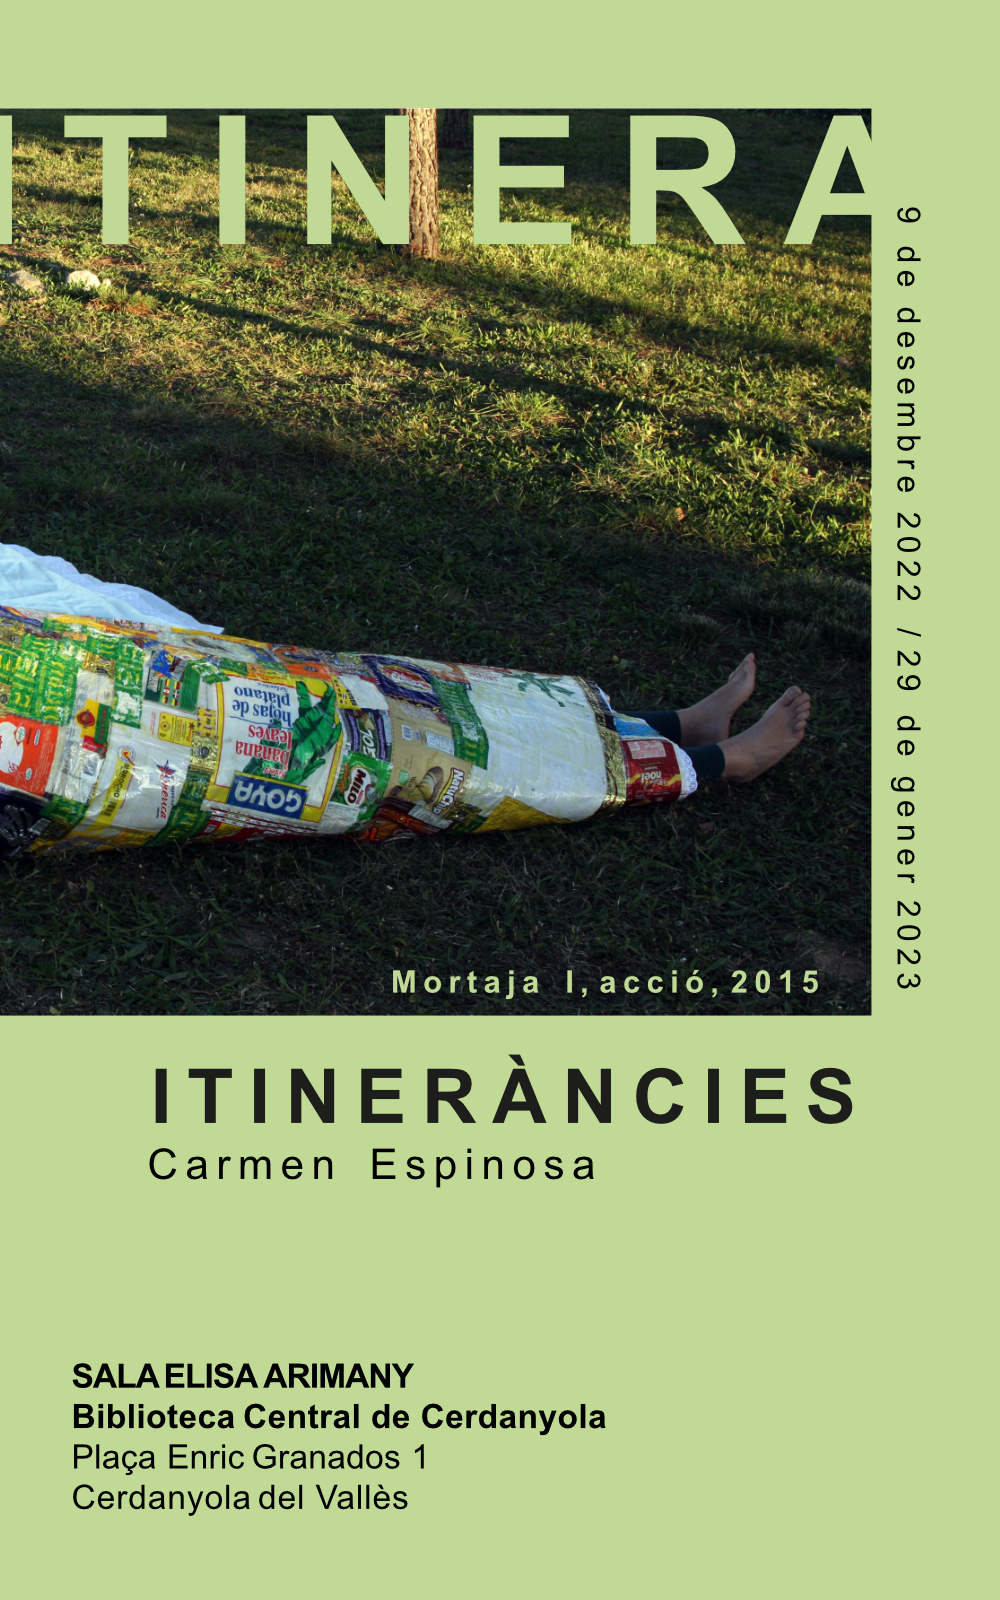 Imatge Exposició Itineràncies de Carme Espinosa